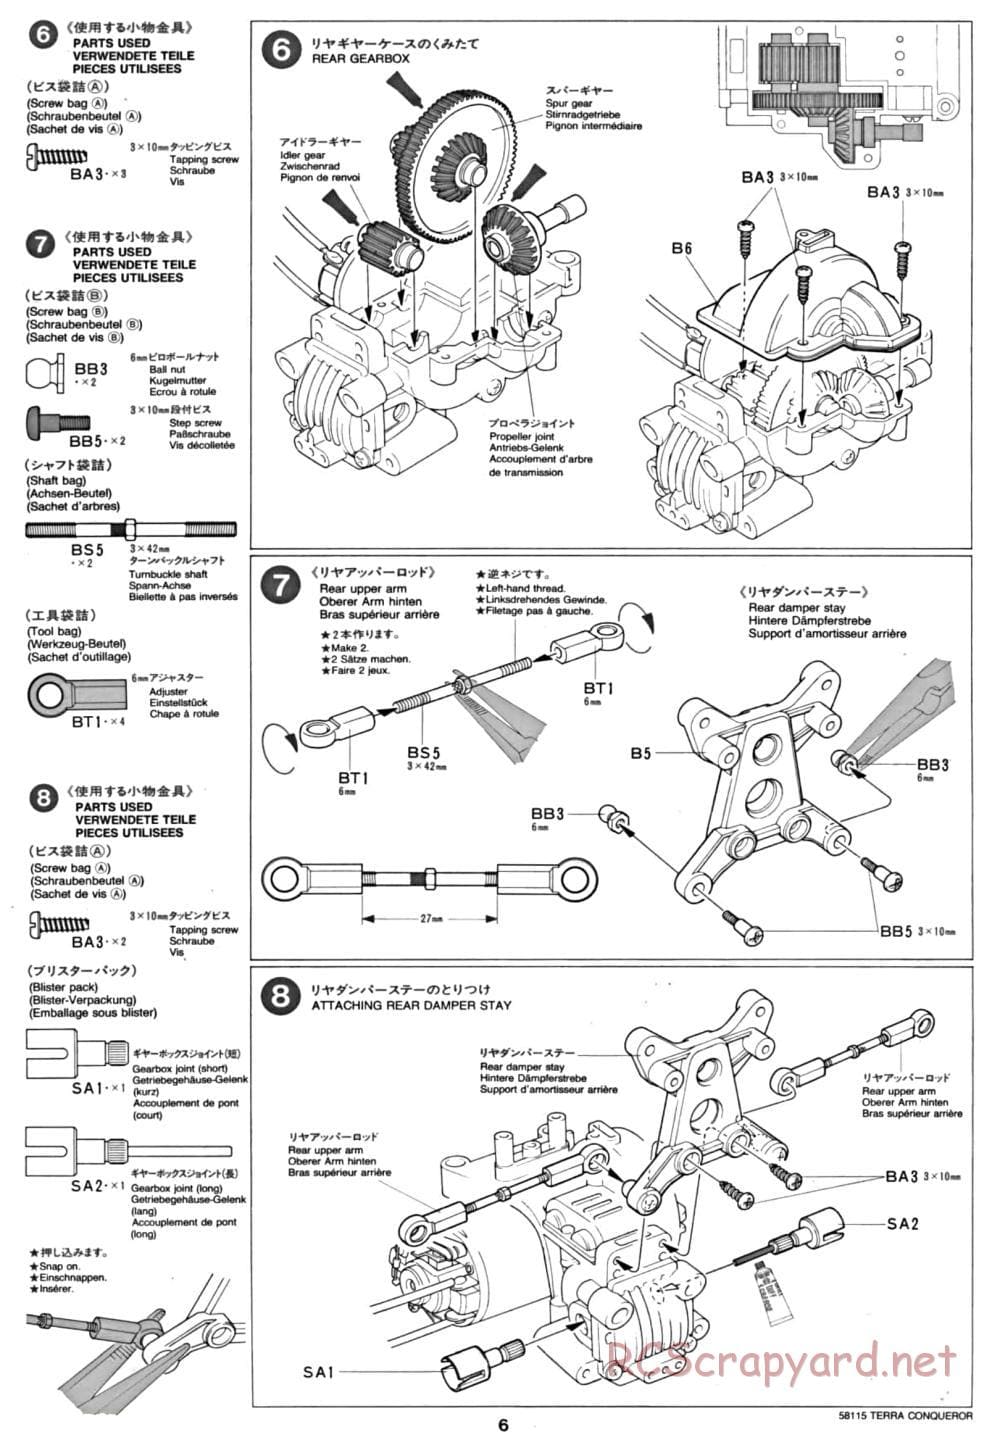 Tamiya - Terra Conqueror Chassis - Manual - Page 6